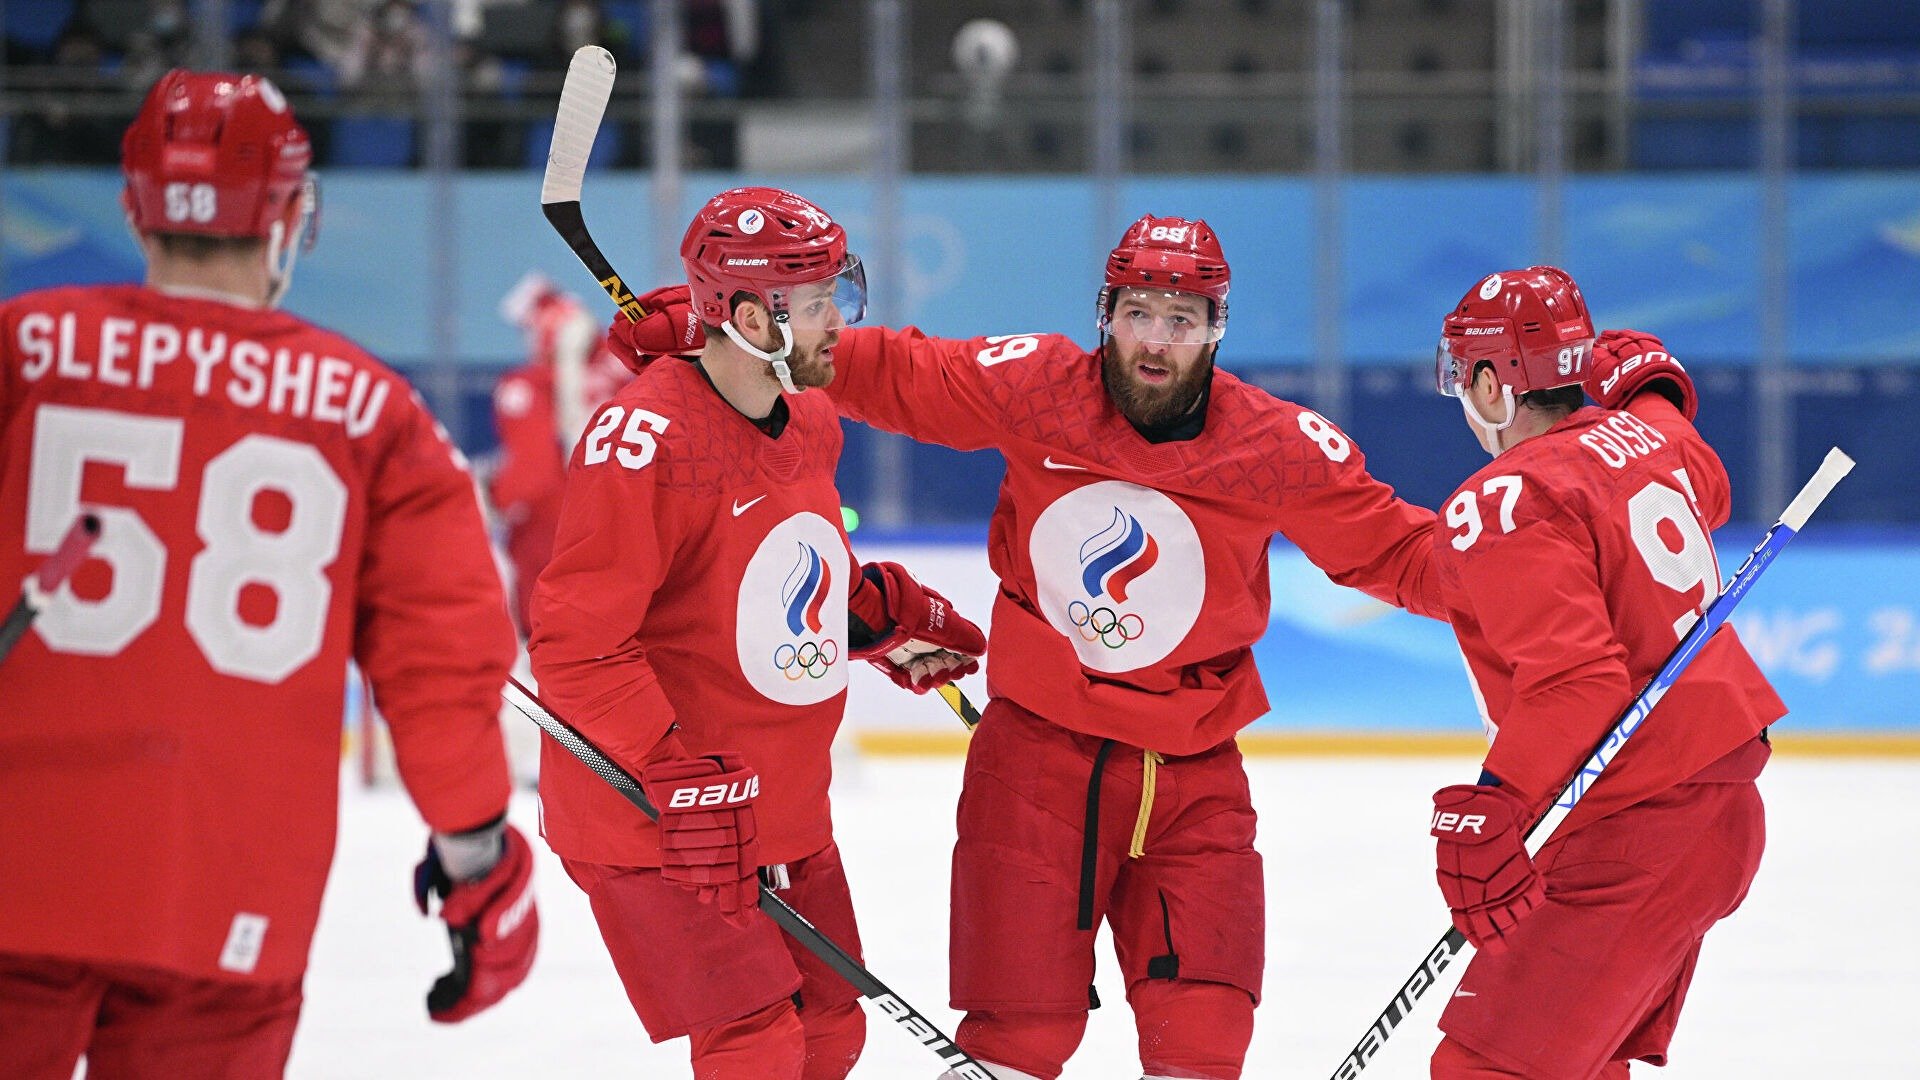 Финляндия - Россия. Прогноз и ставки на хоккей. 20 февраля 2022 года